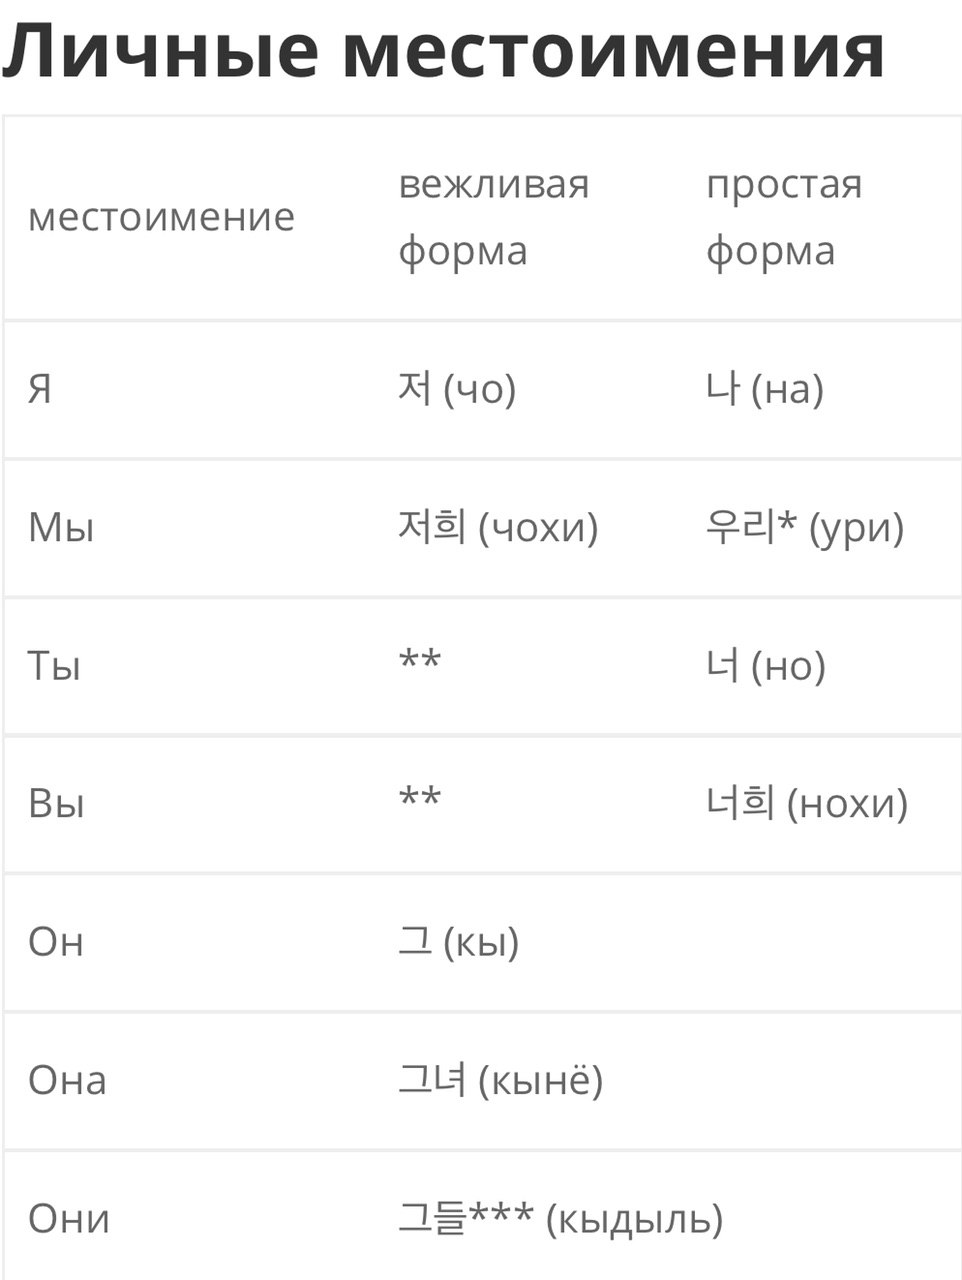 переводчик корея на русский по